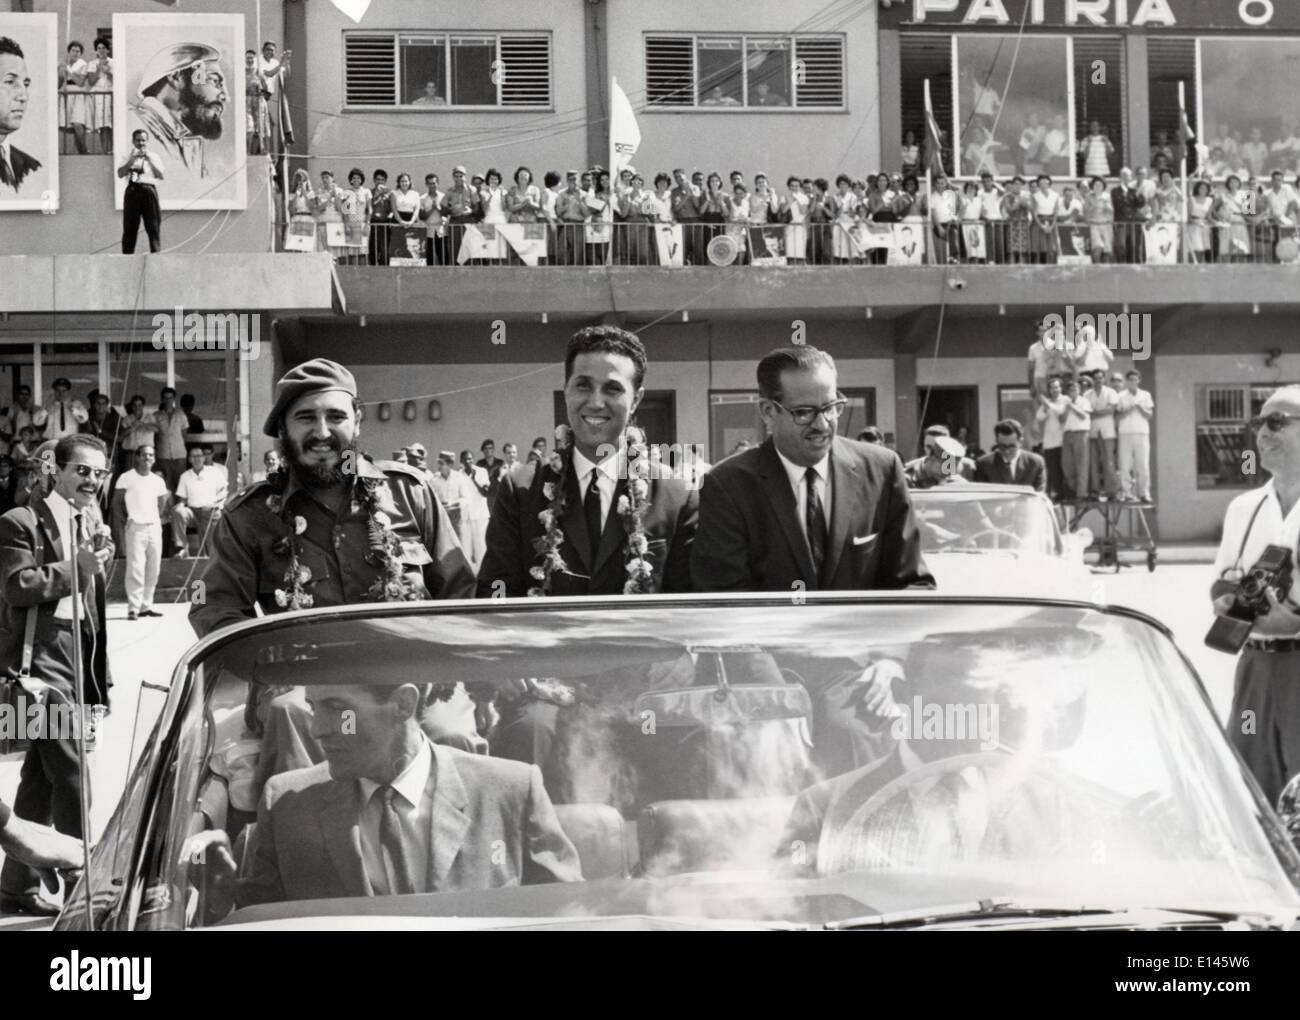 Datei - Ahmed Ben Bella, (25. Dezember 1918 - 11. April 2012), war ein wichtiges Mitglied in der algerischen Revolution und wurde der erste Präsident Algeriens im Jahr 1962, starb am Mittwoch im Alter von 96, lokale APS Nachrichtenagentur berichtet. Foto: 23. Oktober 1962 - Havanna, Kuba - kubanische Revolutionsführer, die sein Land vom Januar 1959 bis zu seiner Pensionierung im Februar 2008 führte FIDEL CASTRO Kuba in verwandelt der erste kommunistische Staat in der westlichen Hemisphäre. Bild: Algerische AHMED BEN BELLA (Mitte) bei einem Besuch in Kuba, neben CASTRO (links) und Kubas Präsident OSVALDO DORTICOS. Stockfoto